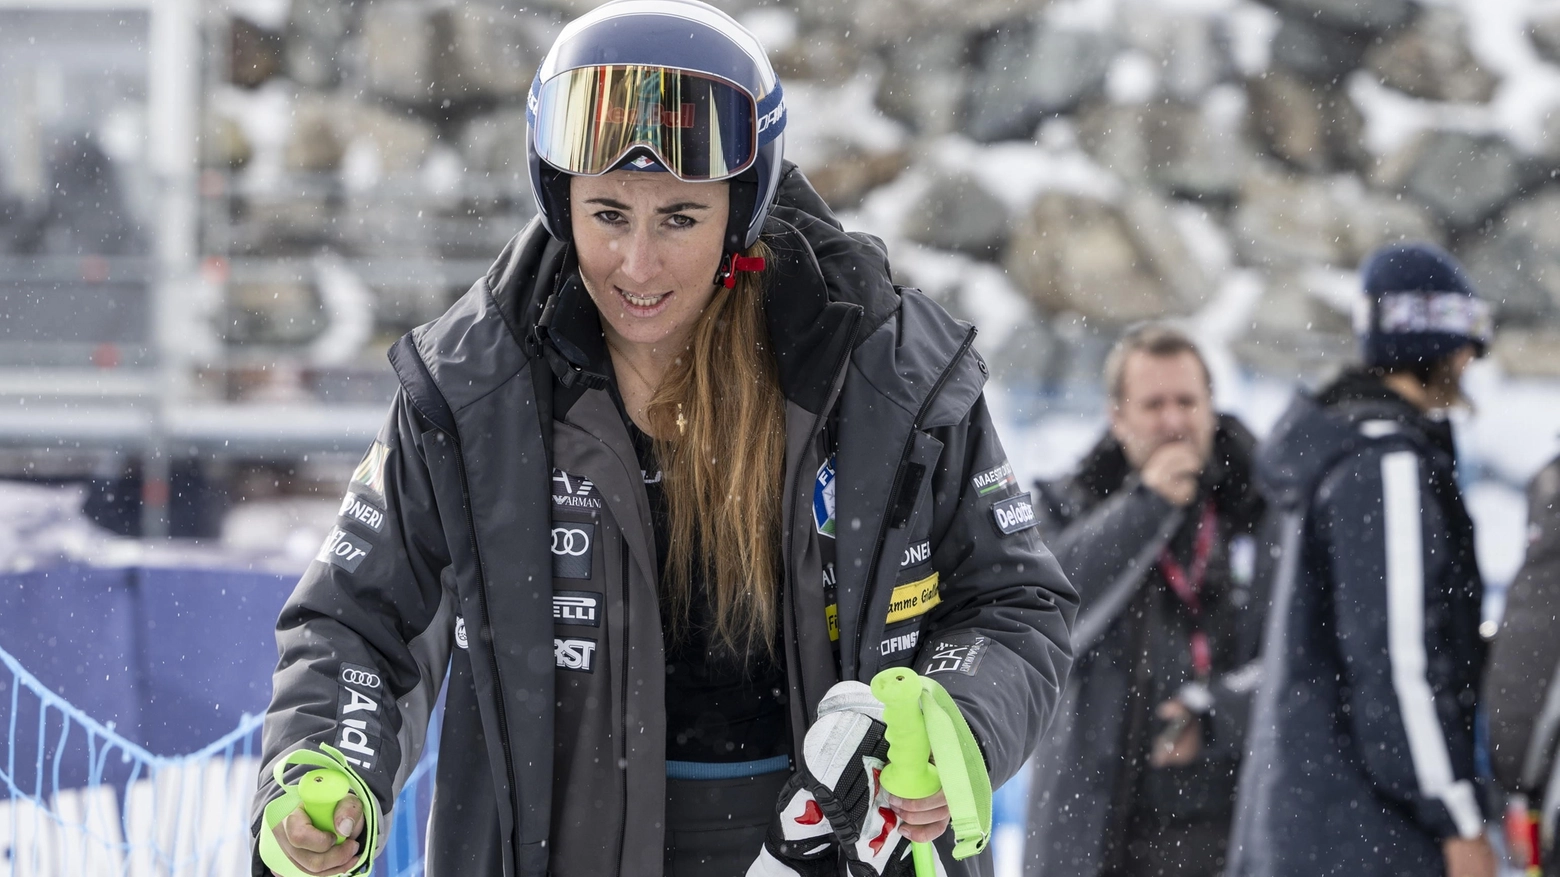 La campionessa di sci dopo l’ennesima operazione: “Sono stata malissimo per 20 giorni, serviranno mesi per tornare. Ma sull’elicottero pensavo a chi stava peggio”